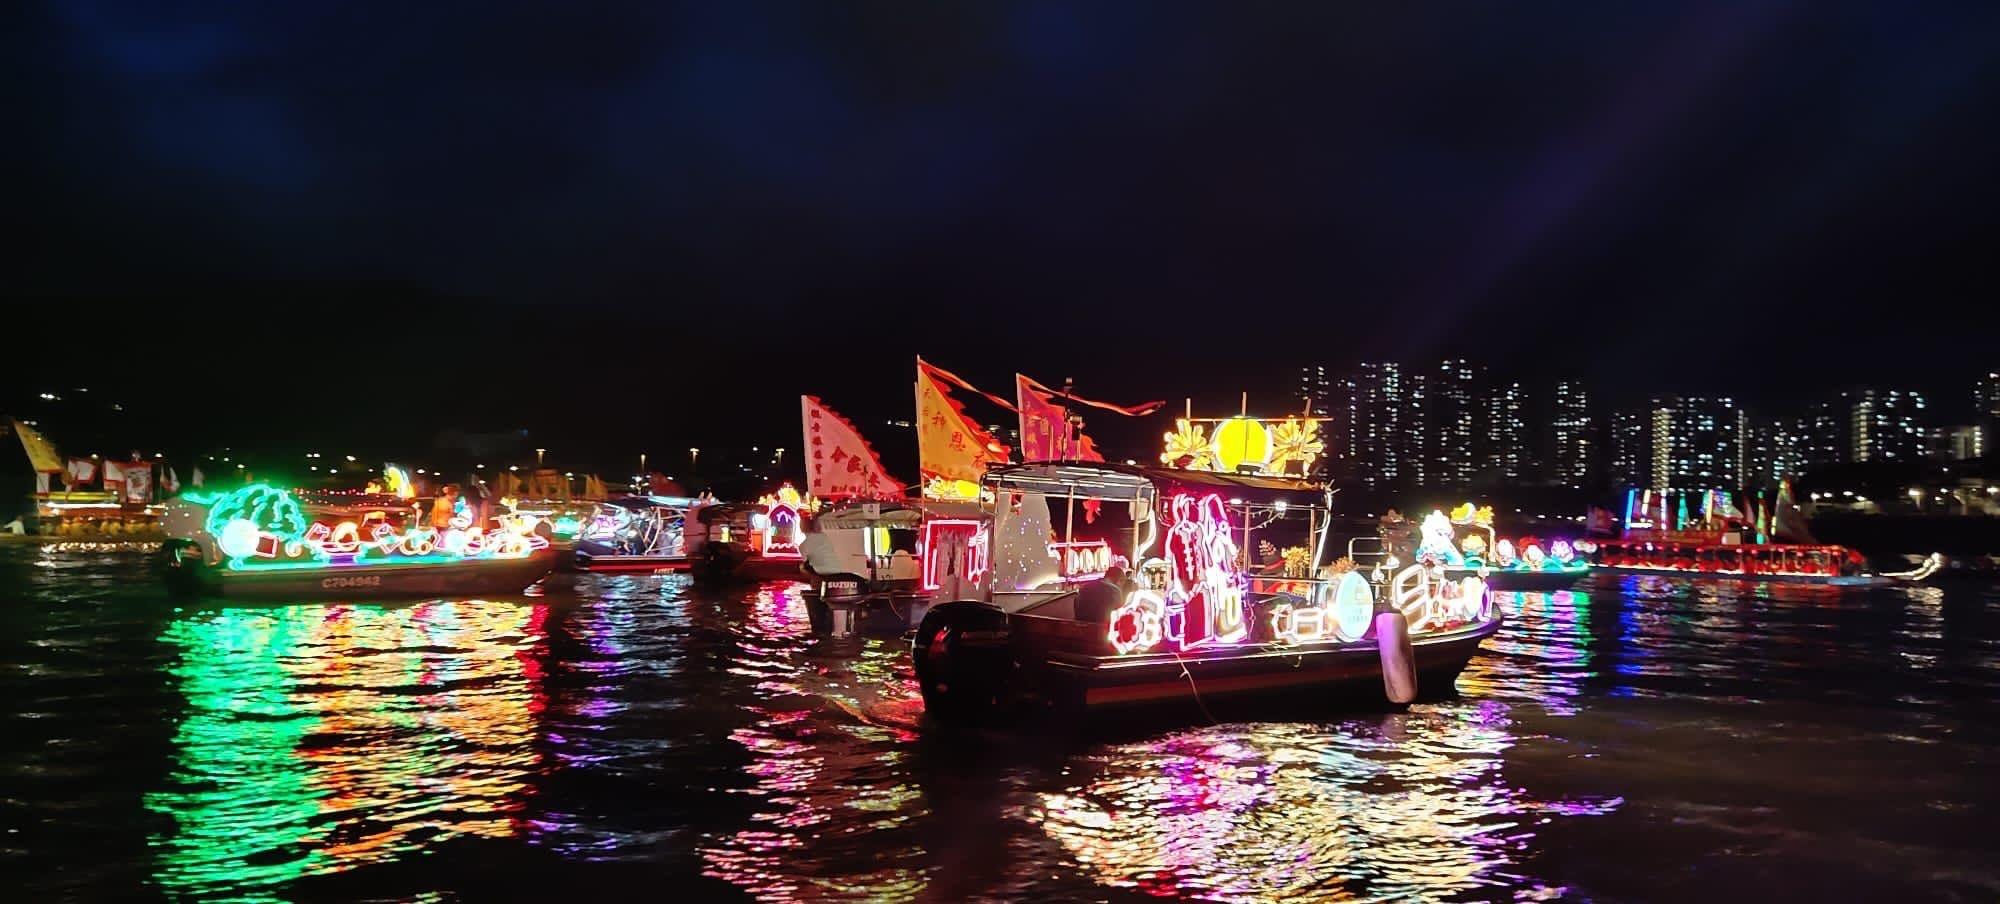 大埔民政事務處和大埔區慶祝香港特別行政區成立二十五周年活動籌備委員會昨日（七月三日）在大埔海濱公園舉行了一場海、陸、空匯演。圖示以大埔地區特色為裝飾的彩燈船在吐露港上巡遊。